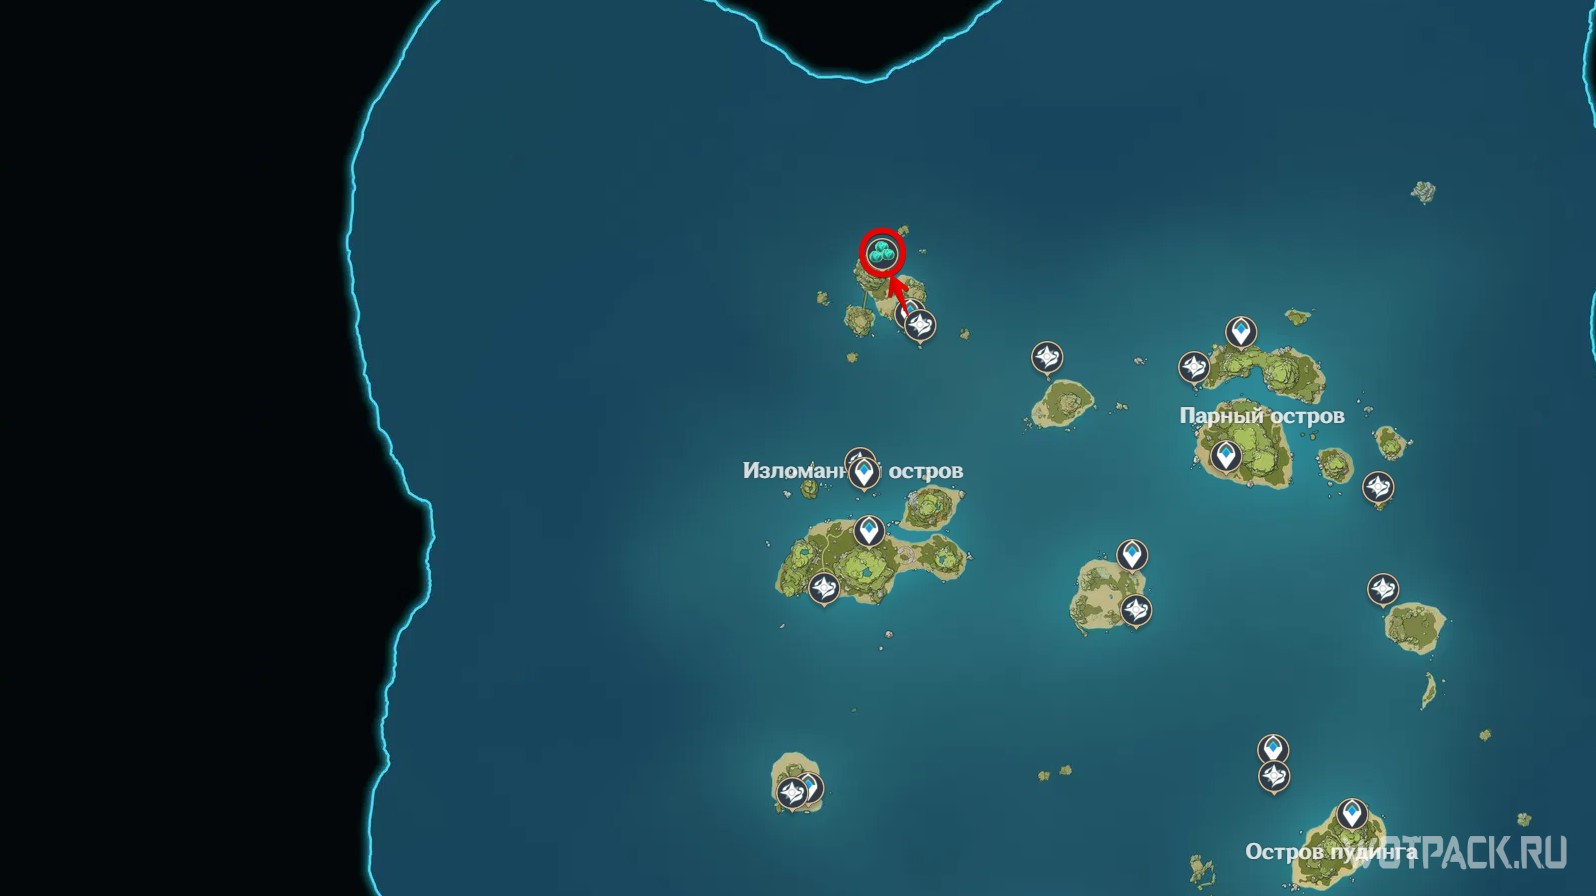 Задание архипелага. Золотой архипелаг. Архипелаг 2.8. Загадка лунного архипелага. Остров Кадзухи в архипелаге.